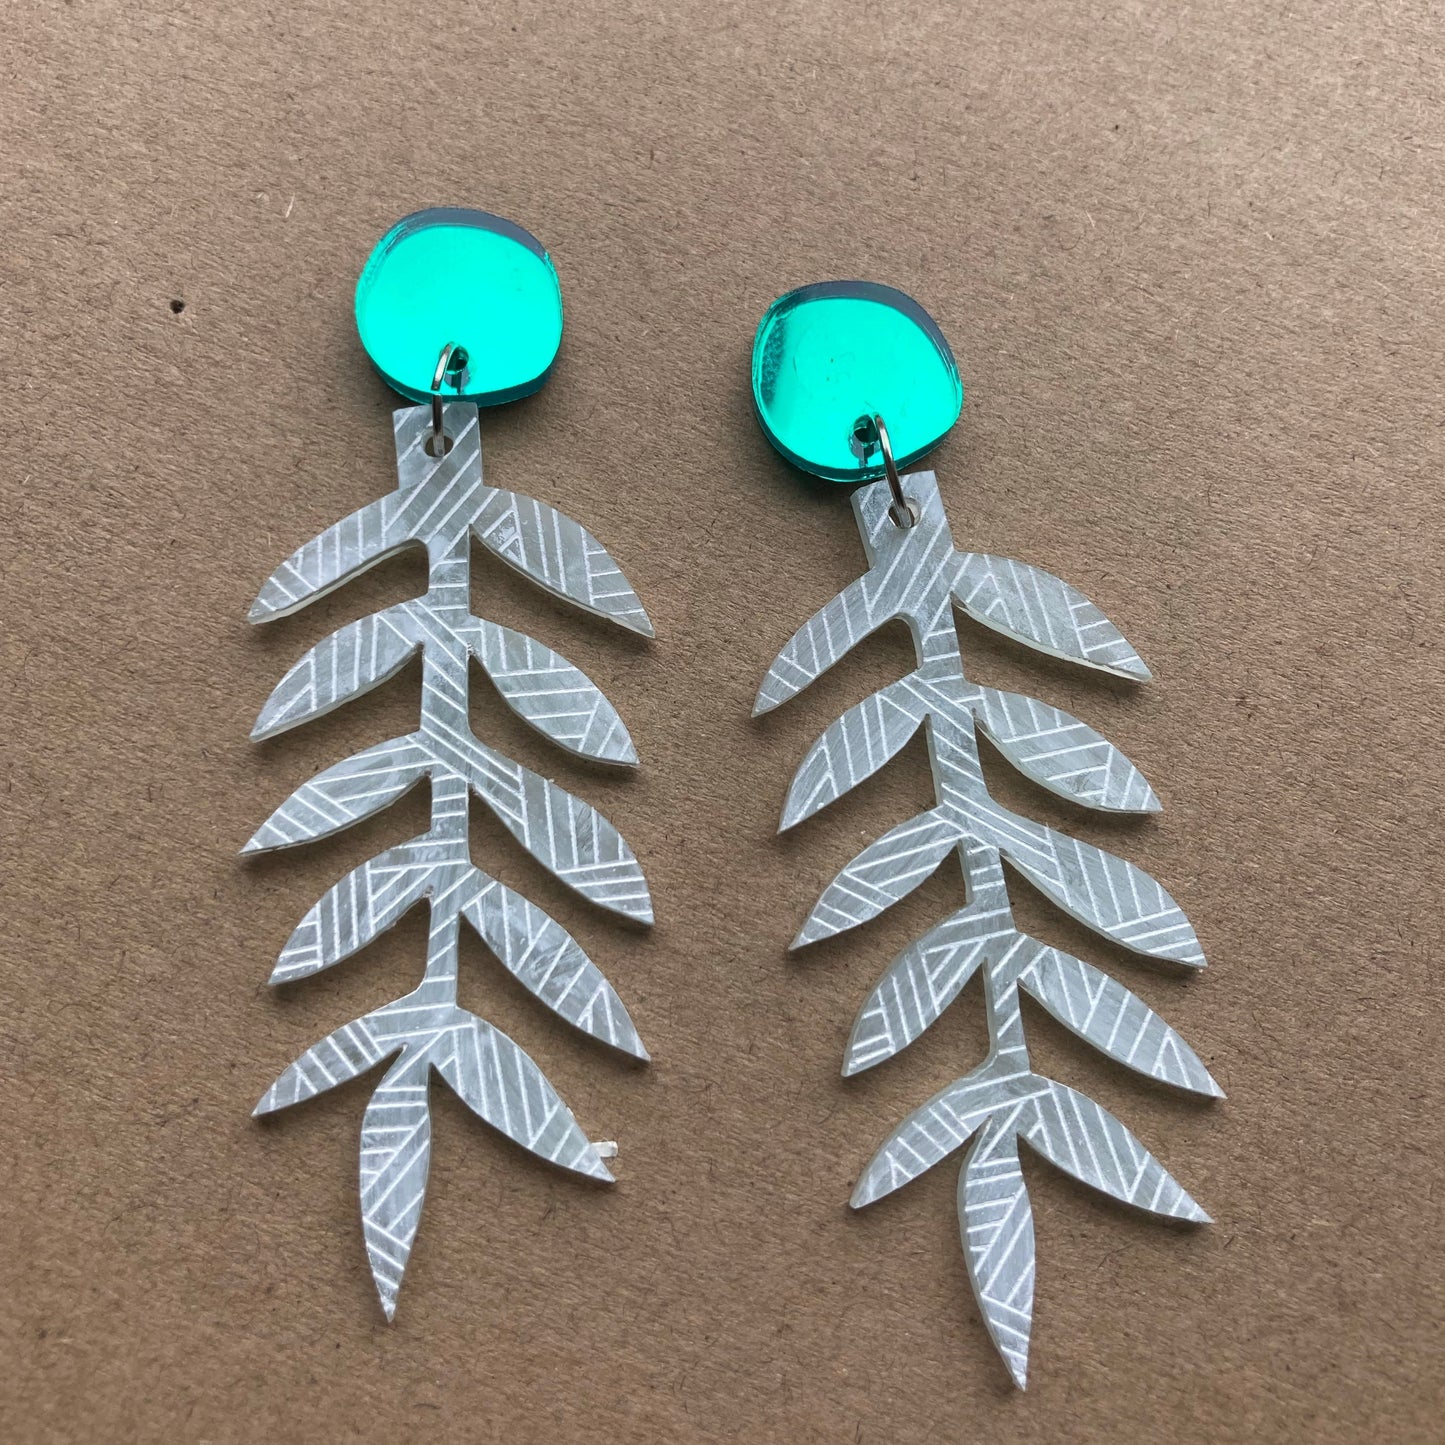 Seagrass earrings